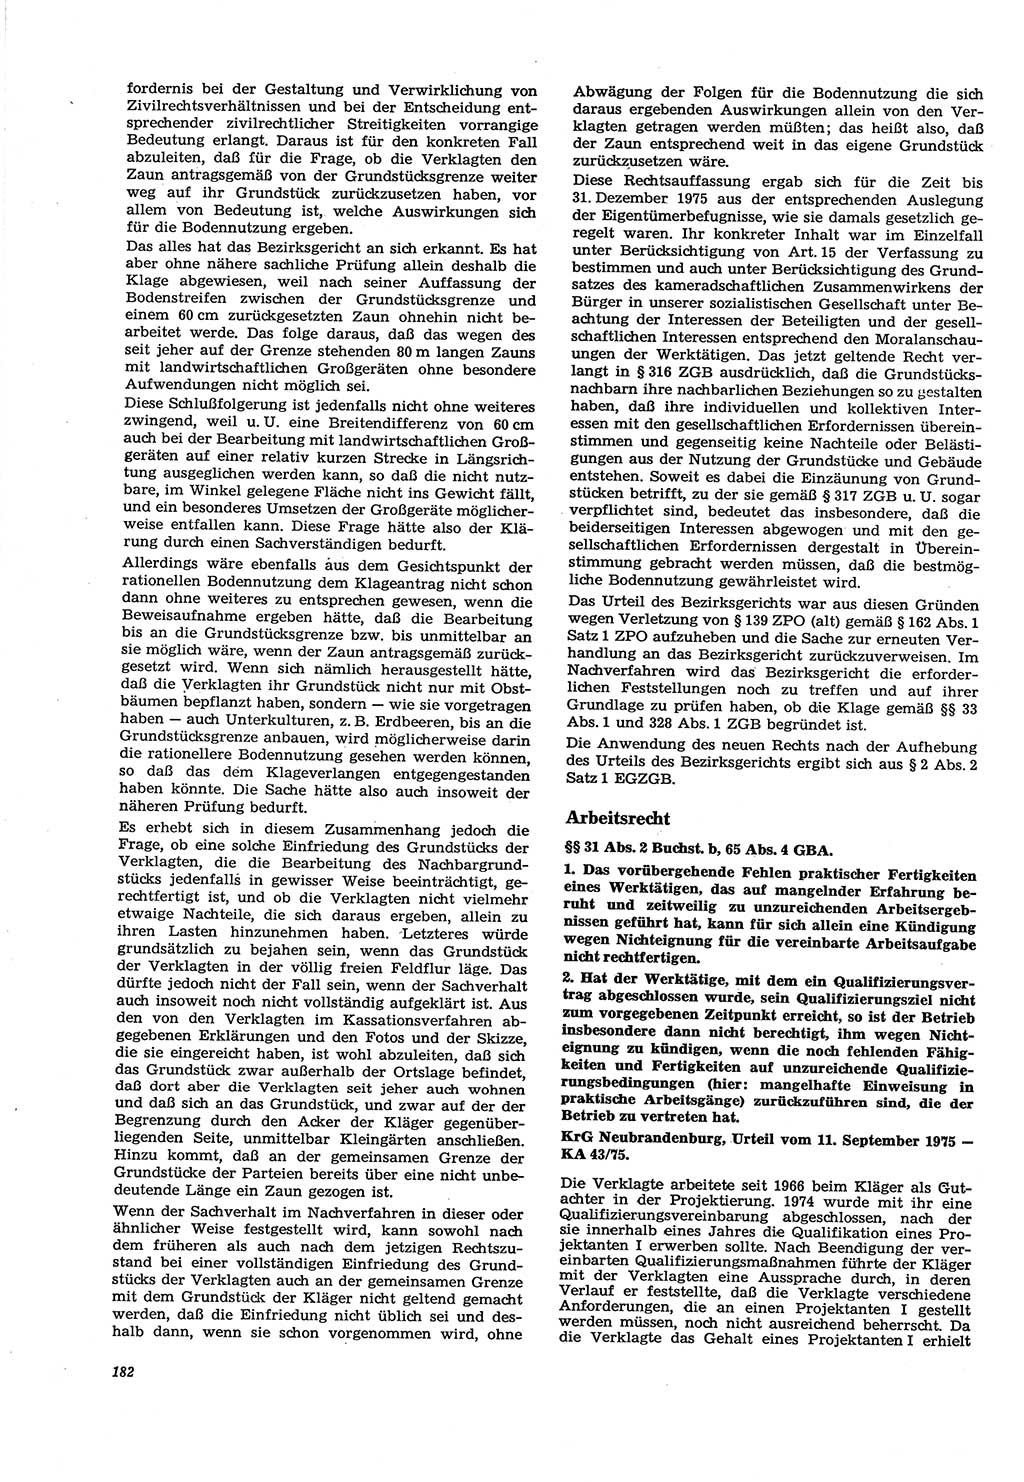 Neue Justiz (NJ), Zeitschrift für Recht und Rechtswissenschaft [Deutsche Demokratische Republik (DDR)], 30. Jahrgang 1976, Seite 182 (NJ DDR 1976, S. 182)